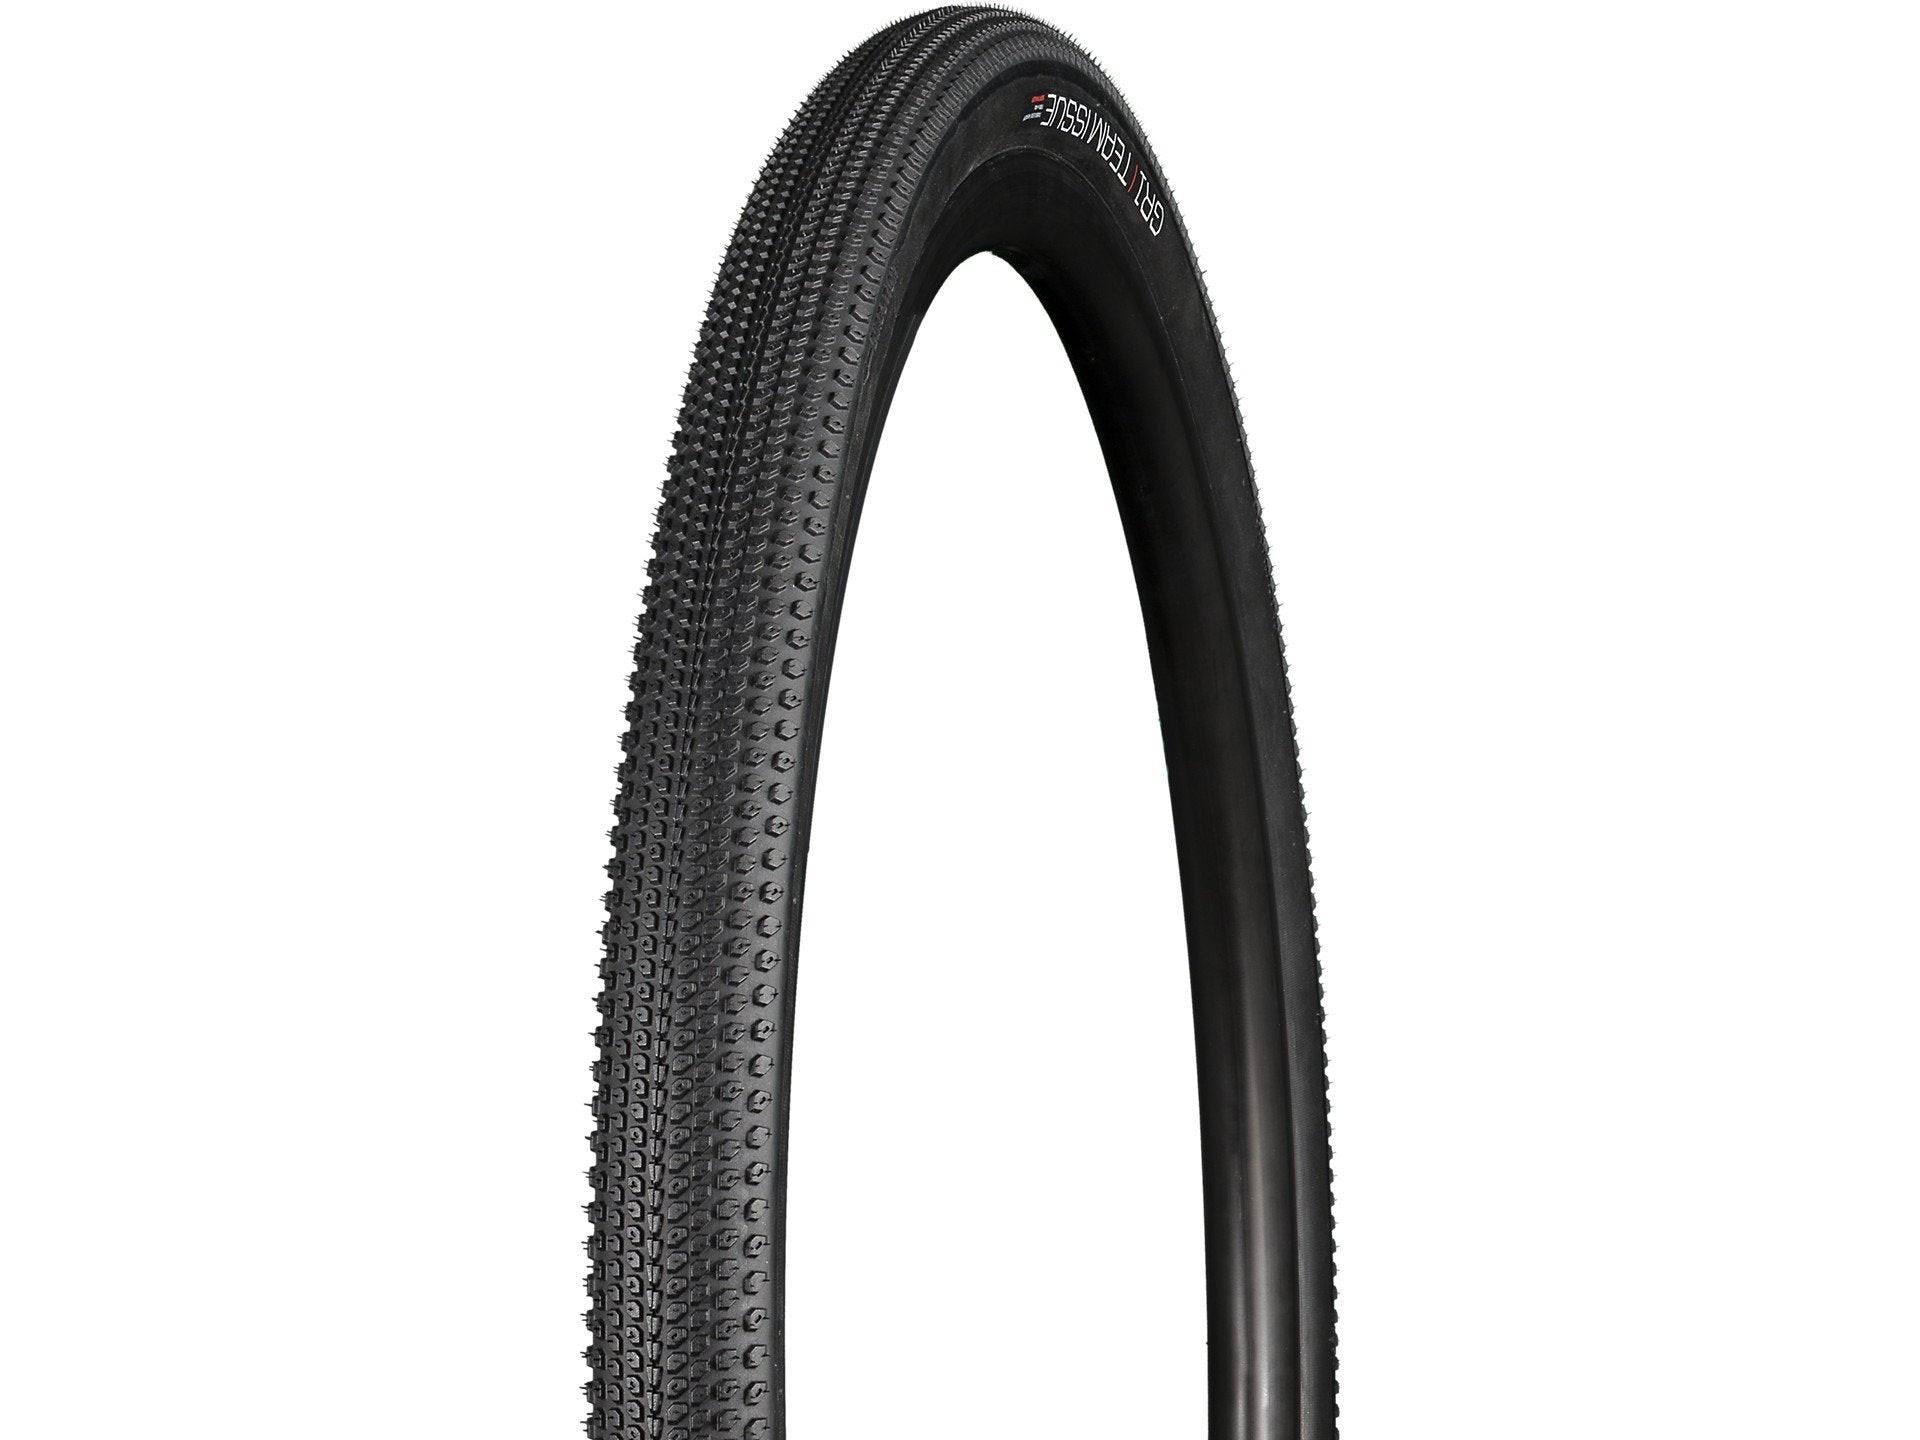 Bontrager GR1 Team Issue TLR Gravel Tyre Black / 700 x 35